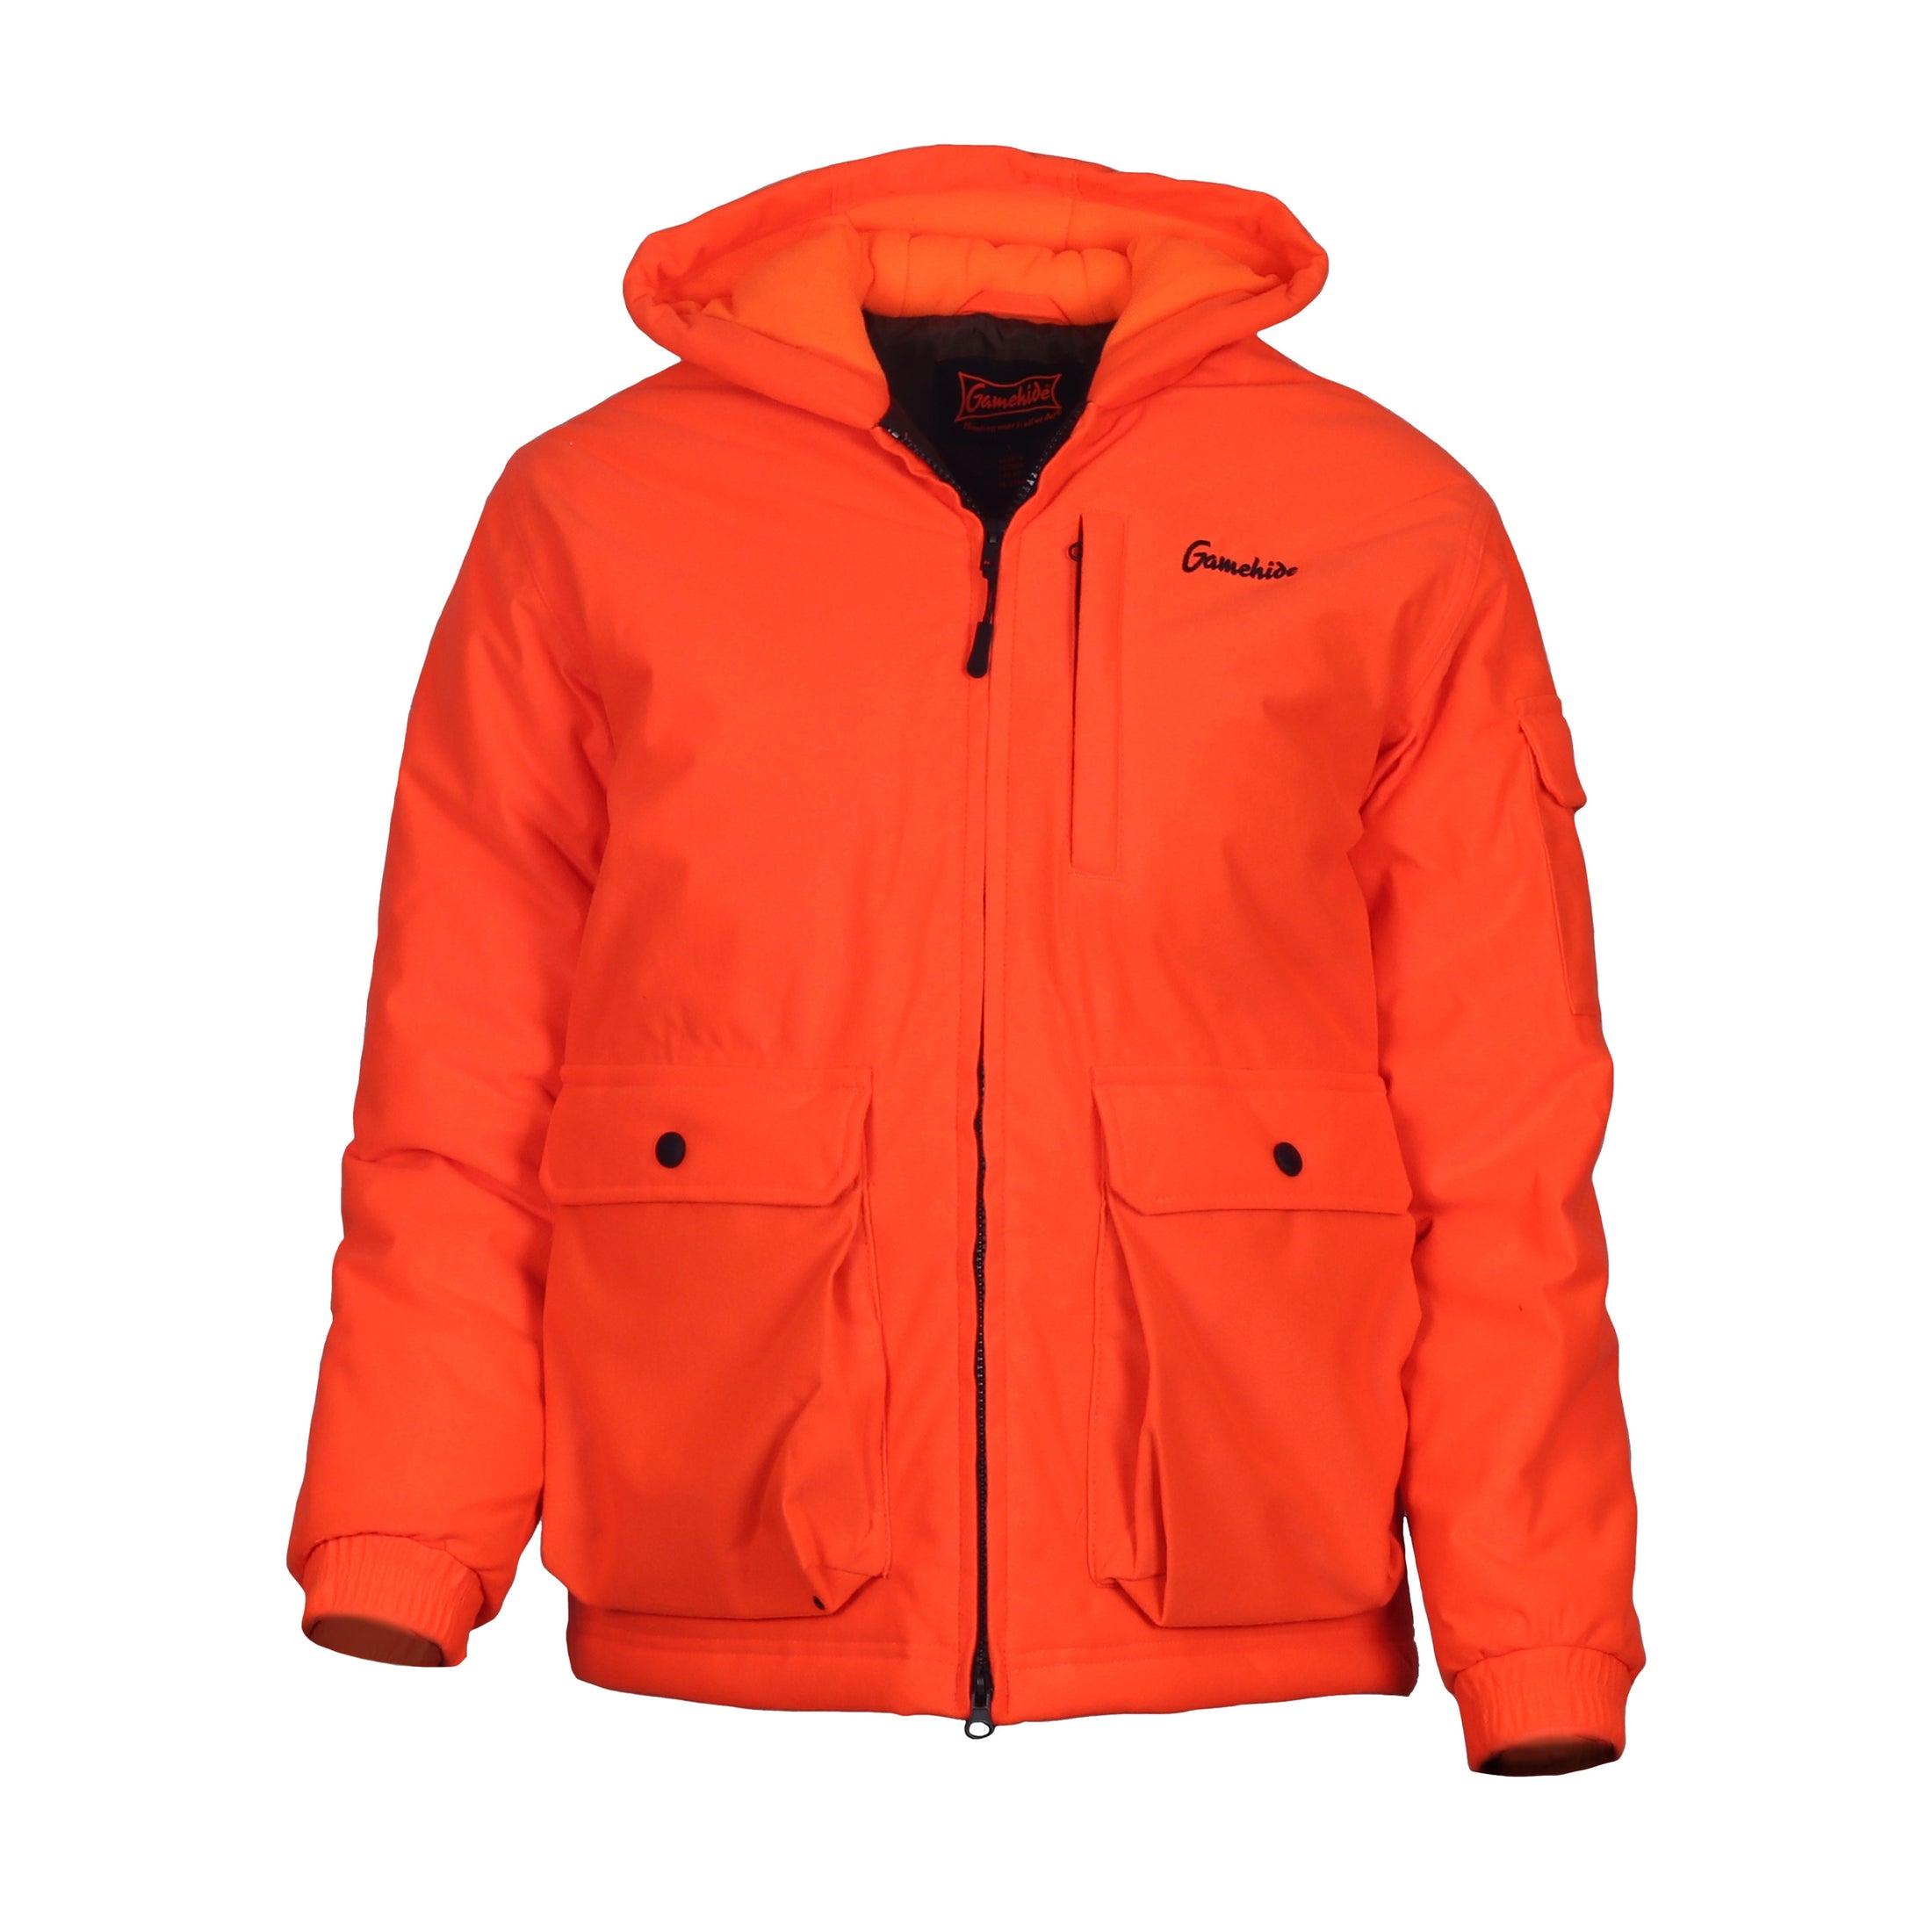 Gamehide youth tundra jacket (blaze orange).